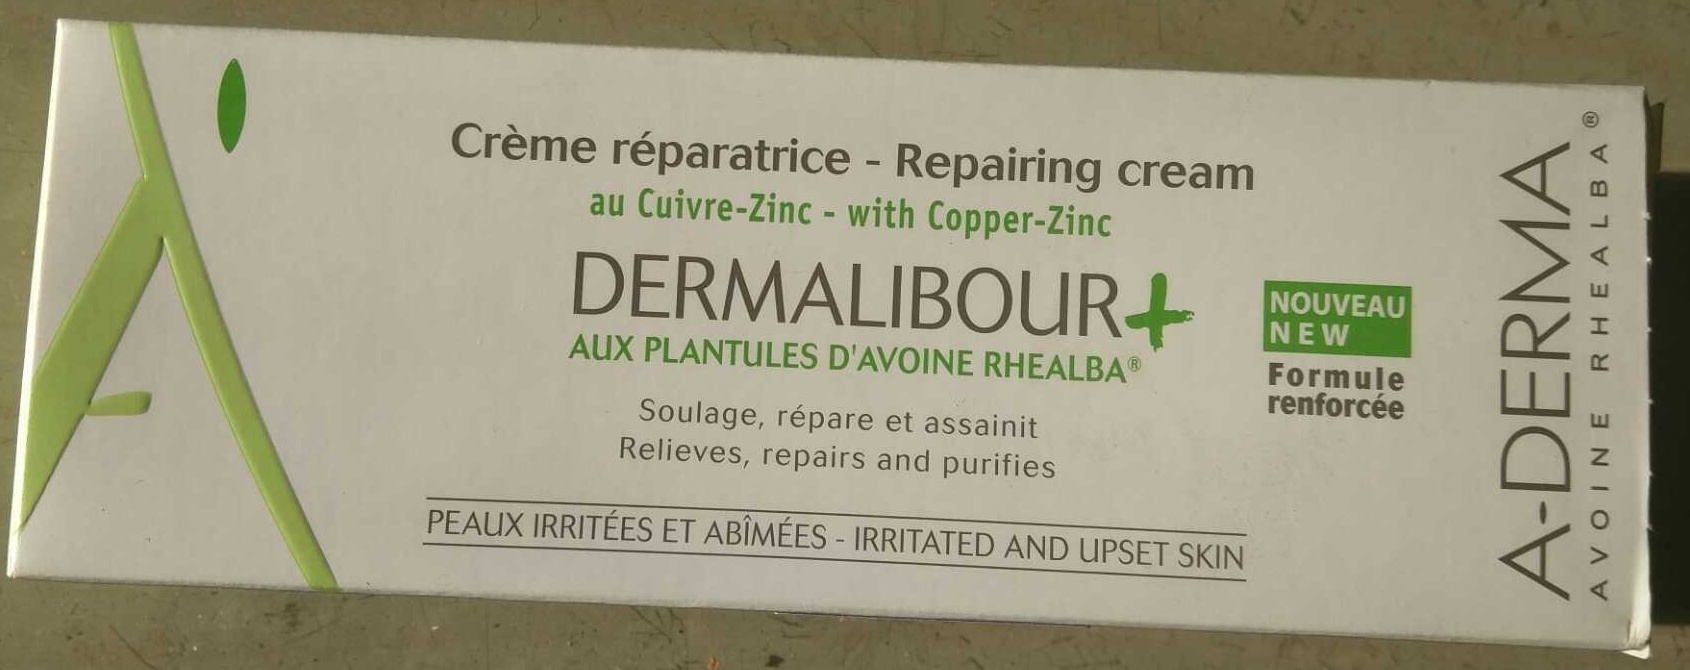 Crème réparatrice Dermalibour+ - Produkto - fr